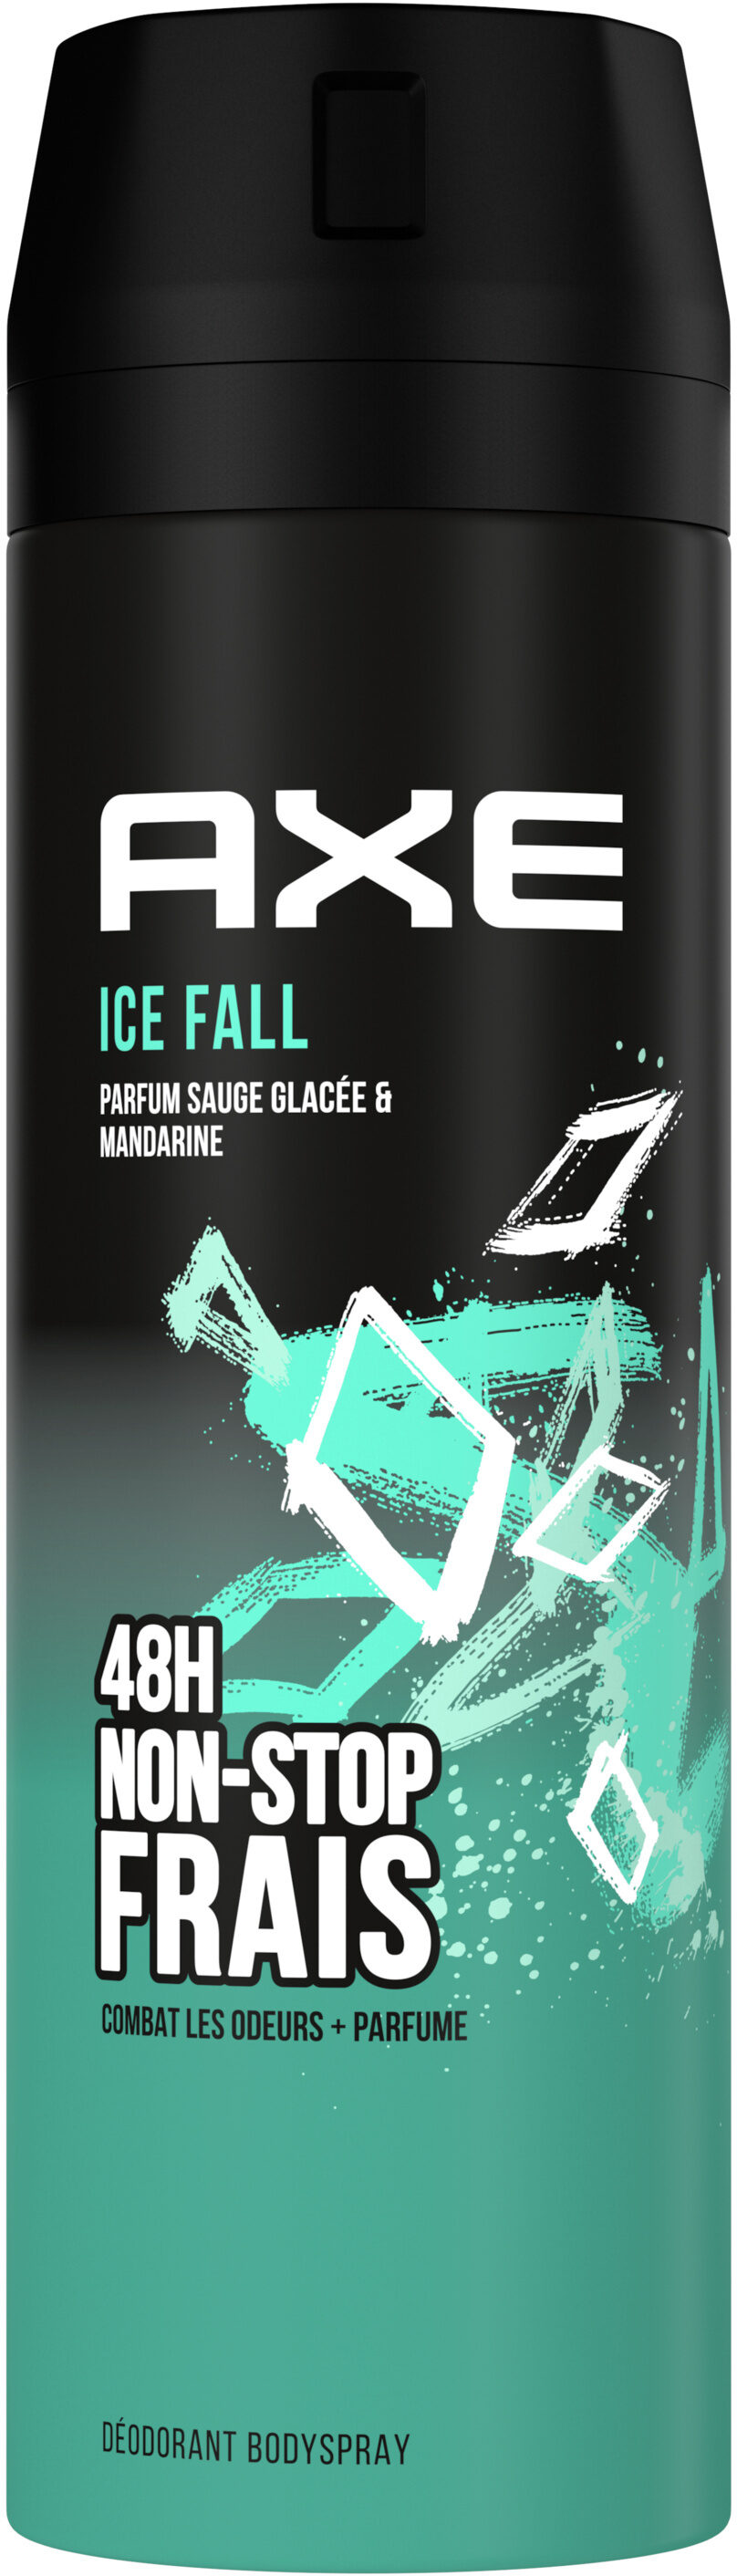 Axe Déodorant Homme Bodyspray Ice Fall 48h Non-Stop Frais 200ml - Produto - fr